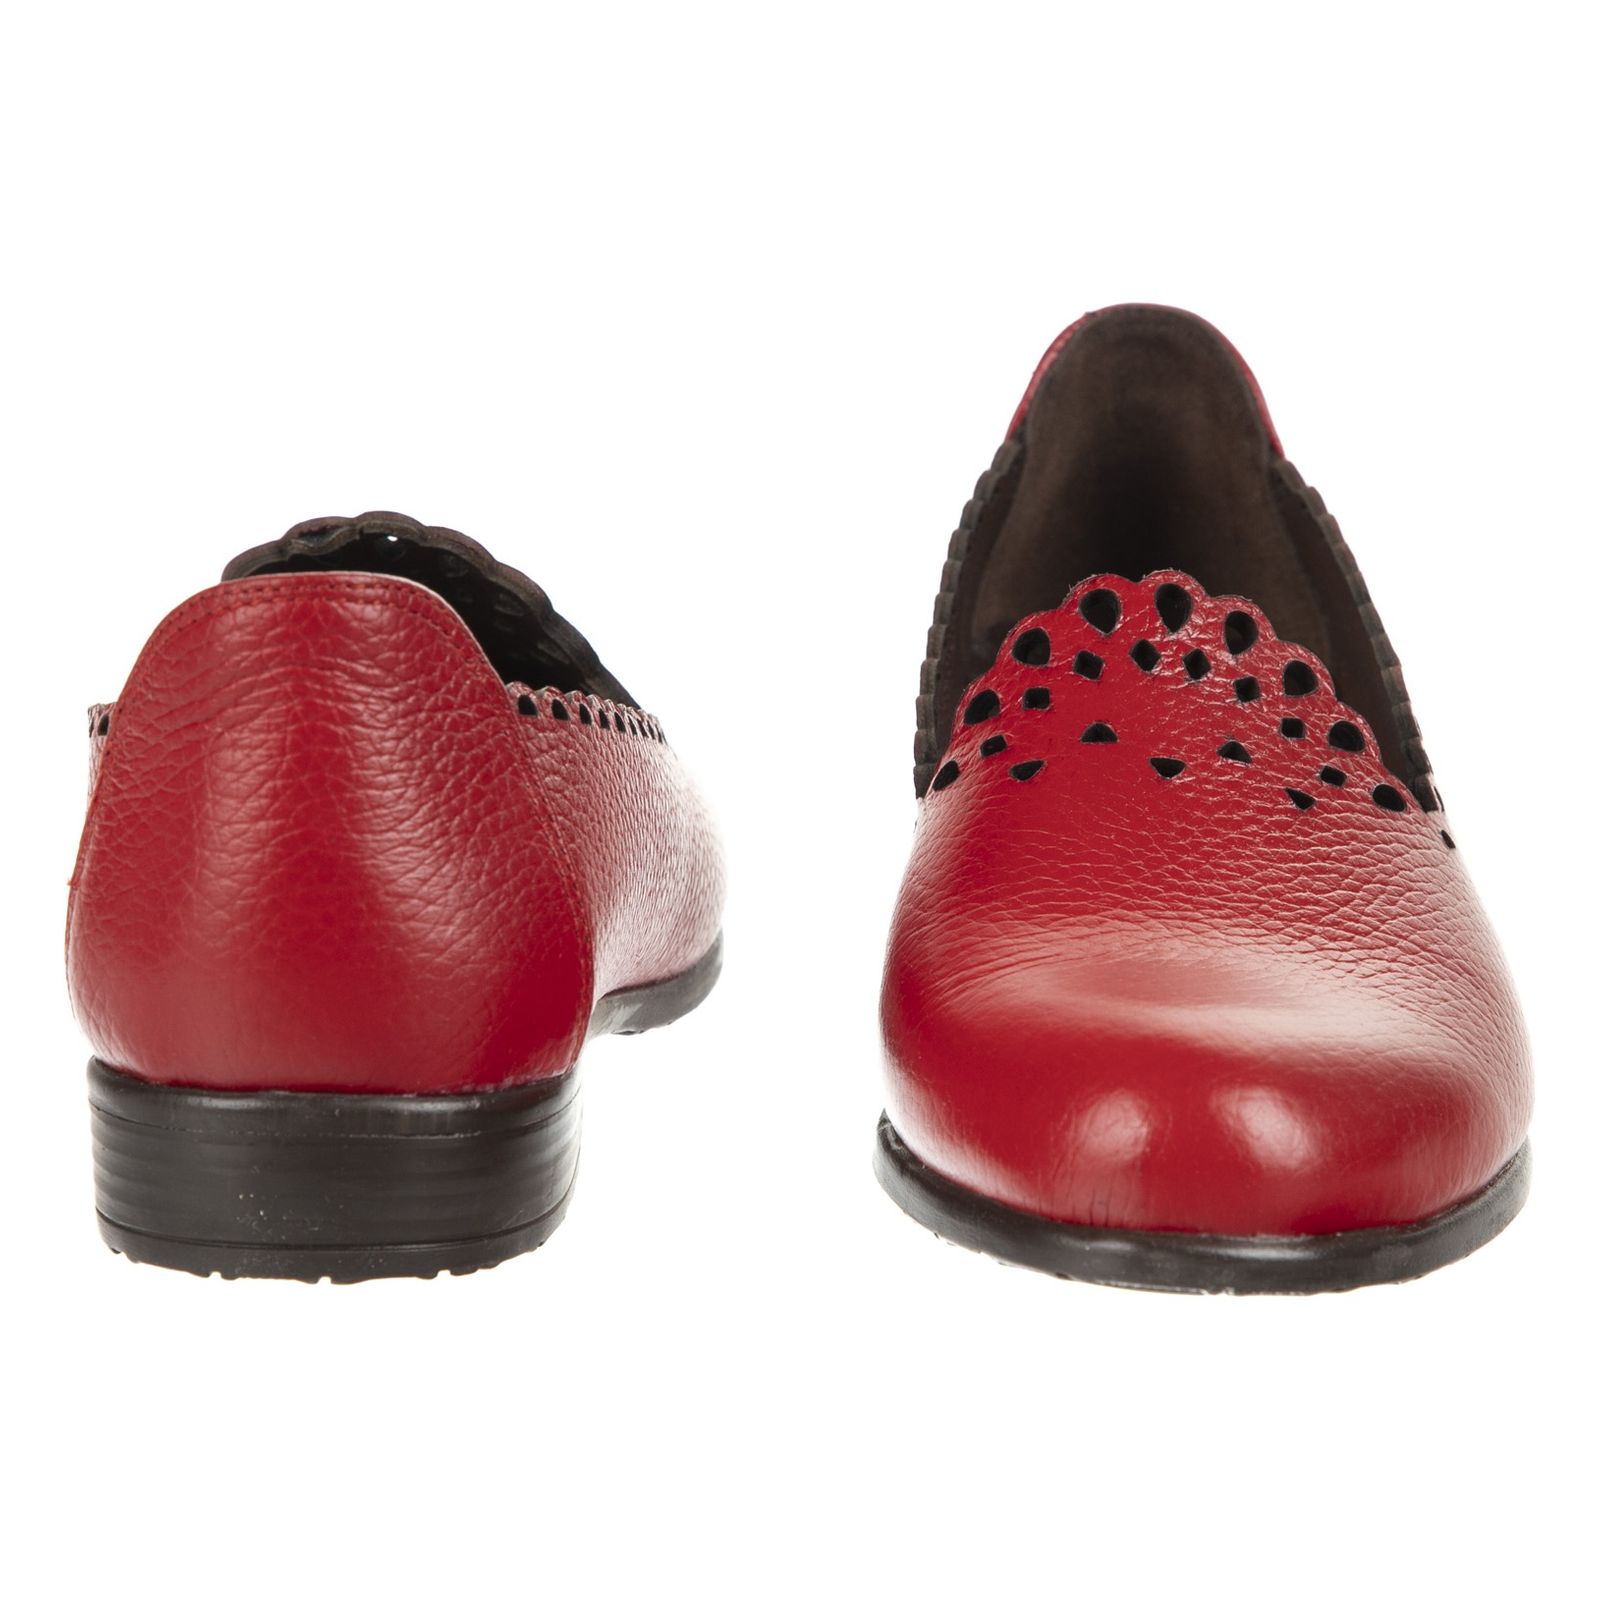 کفش روزمره زنانه ریمکس مدل 5182A500-102 - قرمز - 5